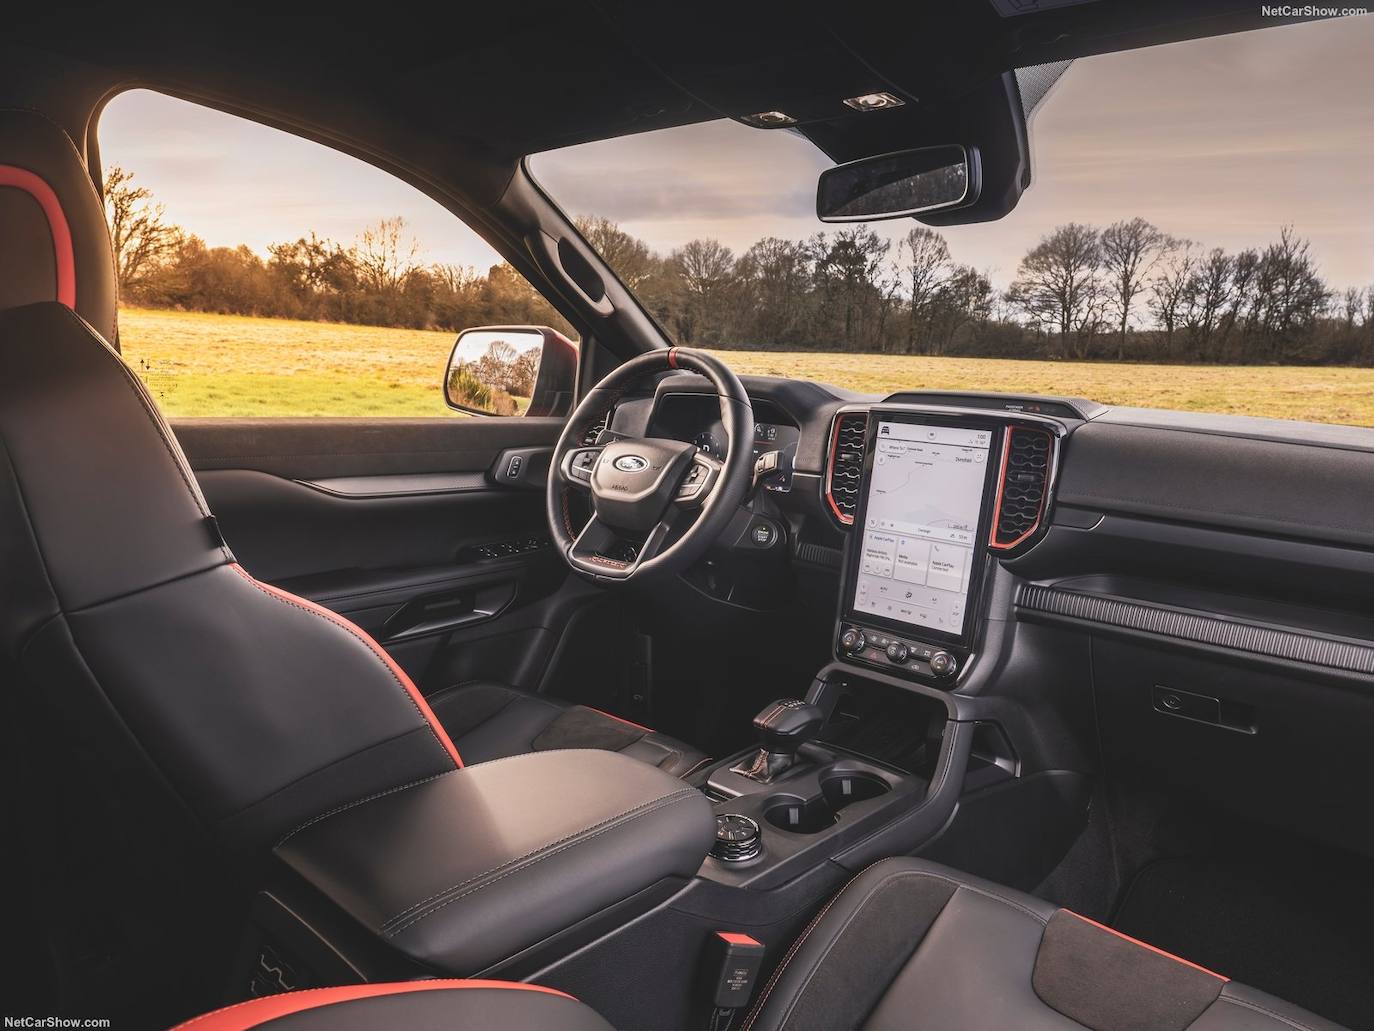 El primer Ranger Raptor de la historia, presentado en 2018 y comercializado en Europa en 2019, estaba equipado con una versión biturbo del motor diésel EcoBlue de 2.0 litros de Ford. Con 213 CV y 500 Nm de par; y la nueva caja de cambios automática de 10 velocidades de Ford, el Ranger Raptor estaba construido para resistir las más duras condiciones off-road y ofrecer un rendimiento inigualable en todos los terrenos.